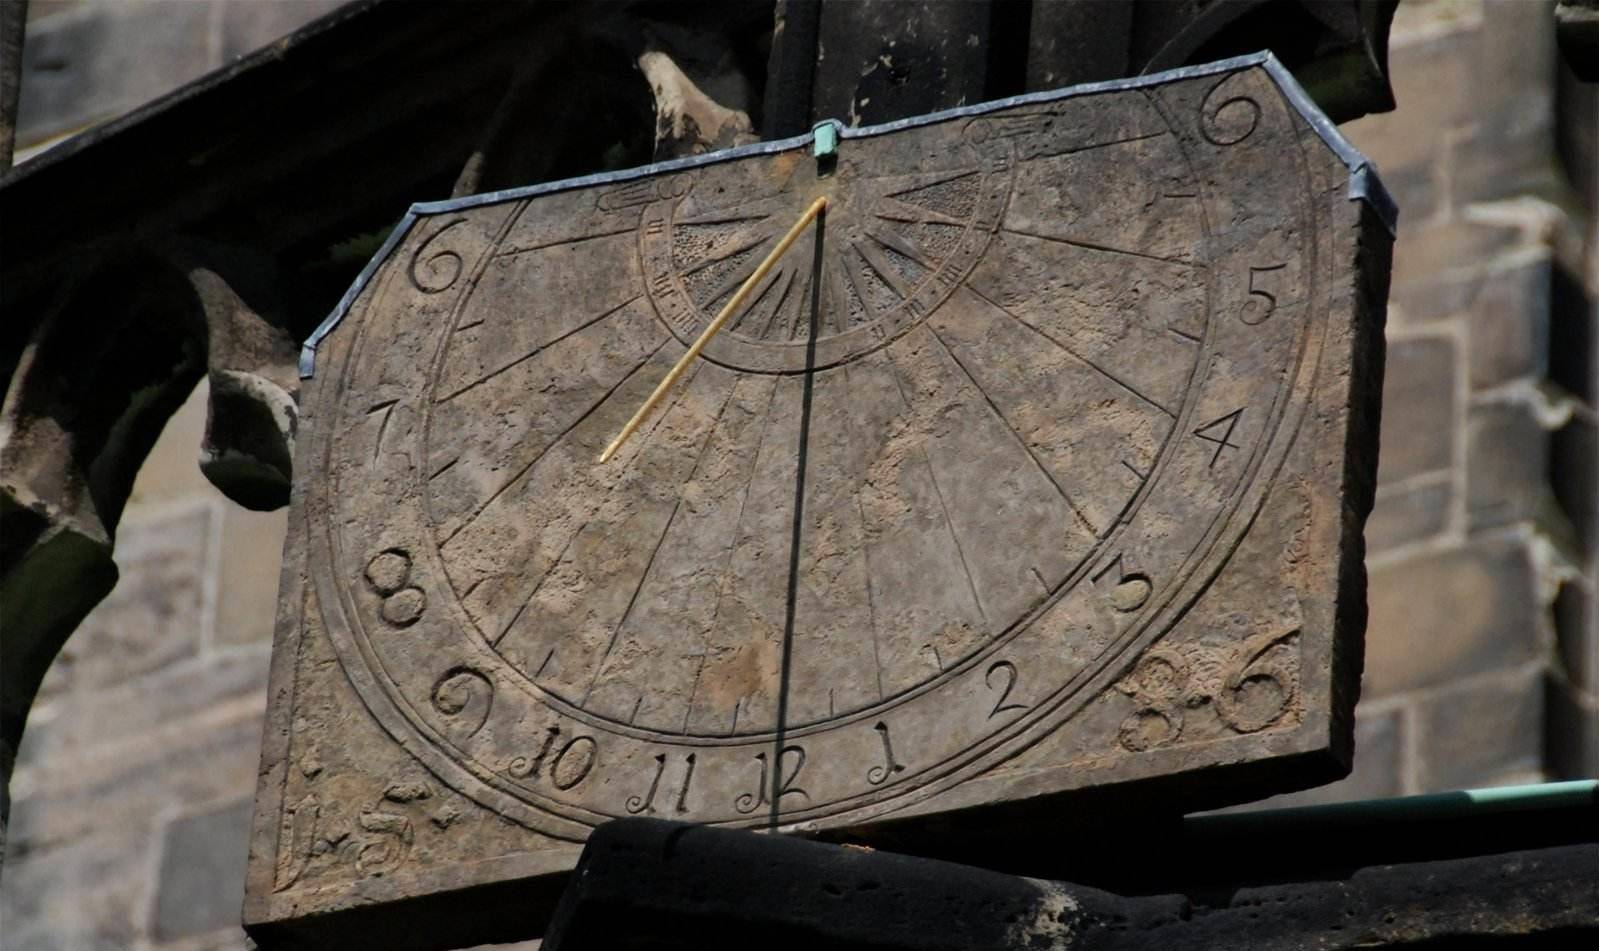 欧洲文艺复兴时期的日晷观察太阳和星星的问题,可能是埃及人发明了